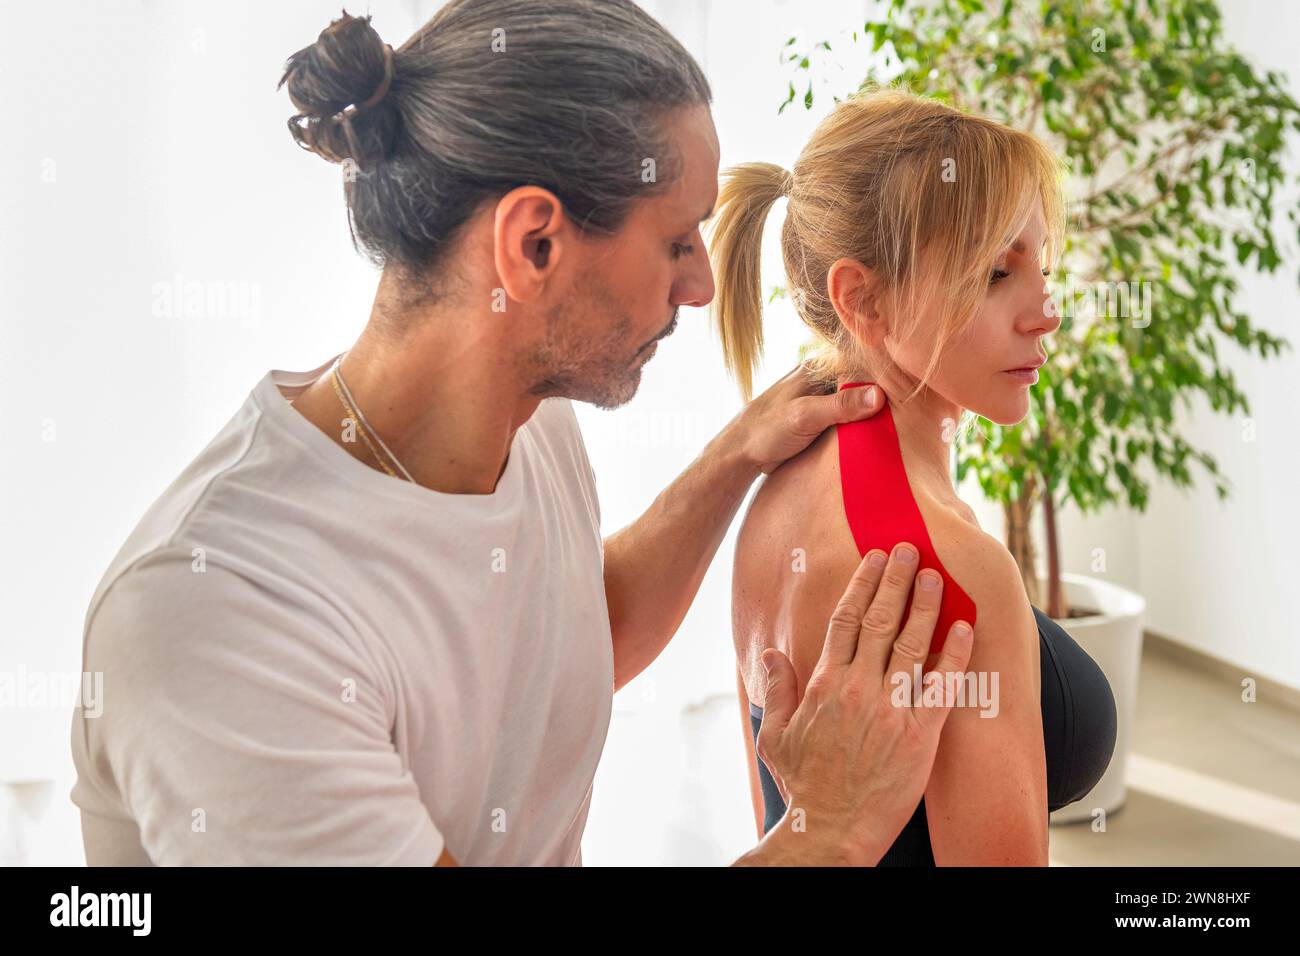 Masajista experimentado tratando el hombro de la señora herida con kinesiotape rojo durante el entrenamiento de yoga en el estudio de fitness contra la planta en maceta cerca de la pared blanca Foto de stock